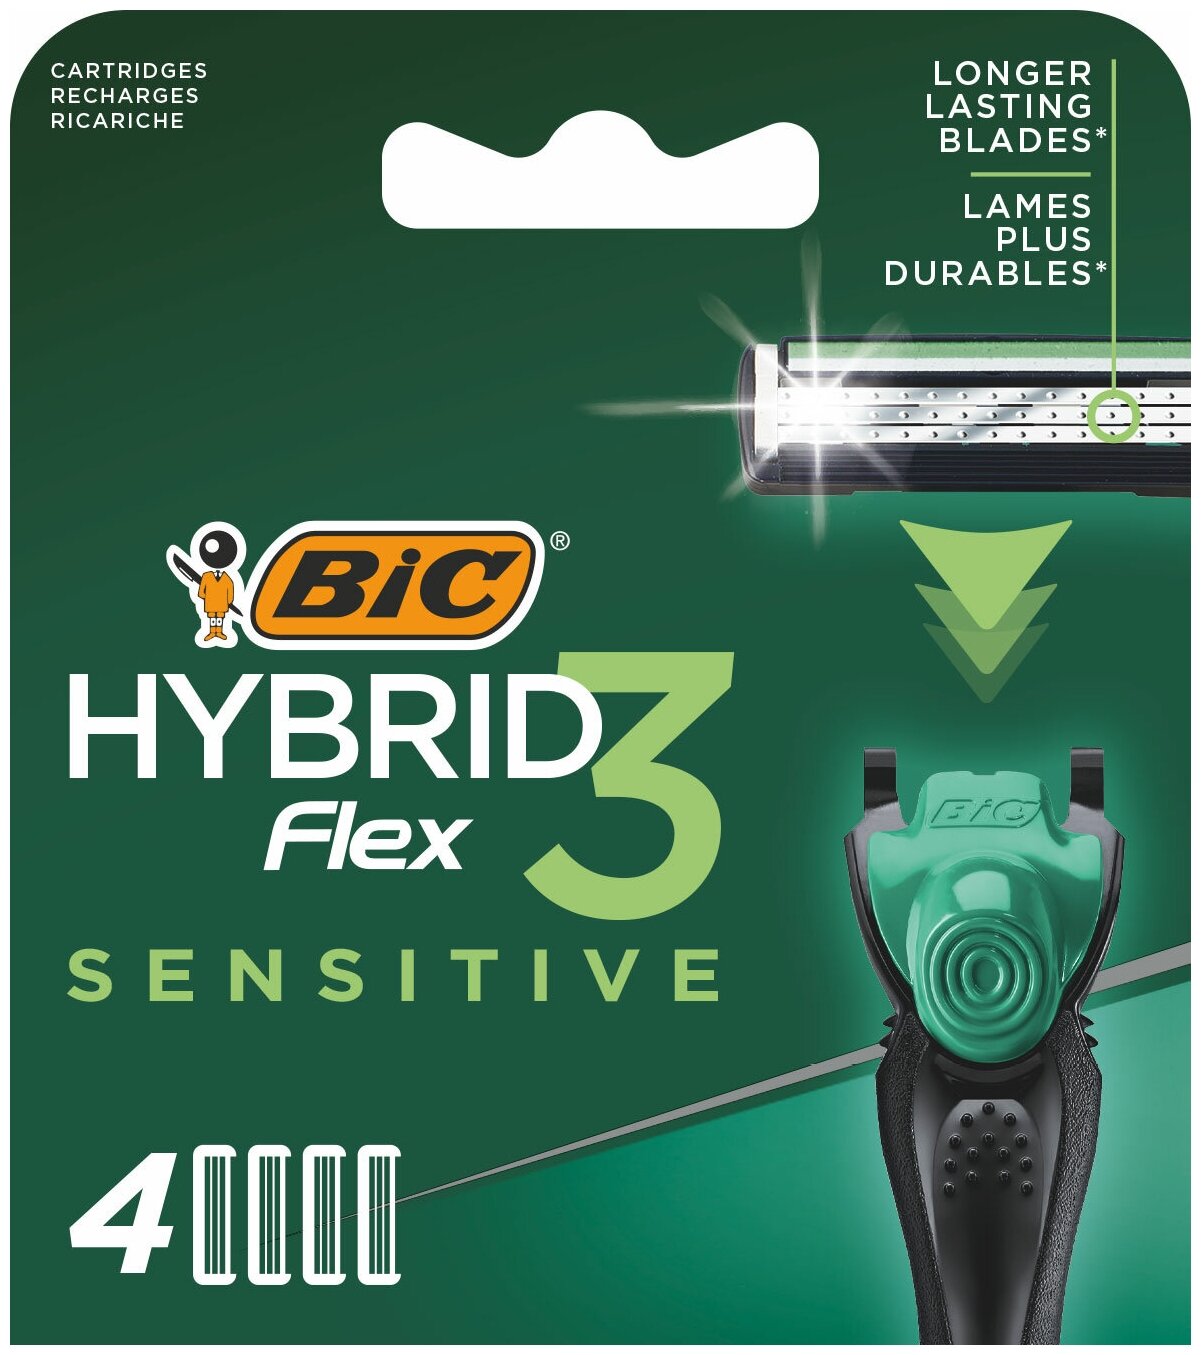 Кассеты для бритья Bic Hybrid 3 Flex Sensitive 4шт - фото №1